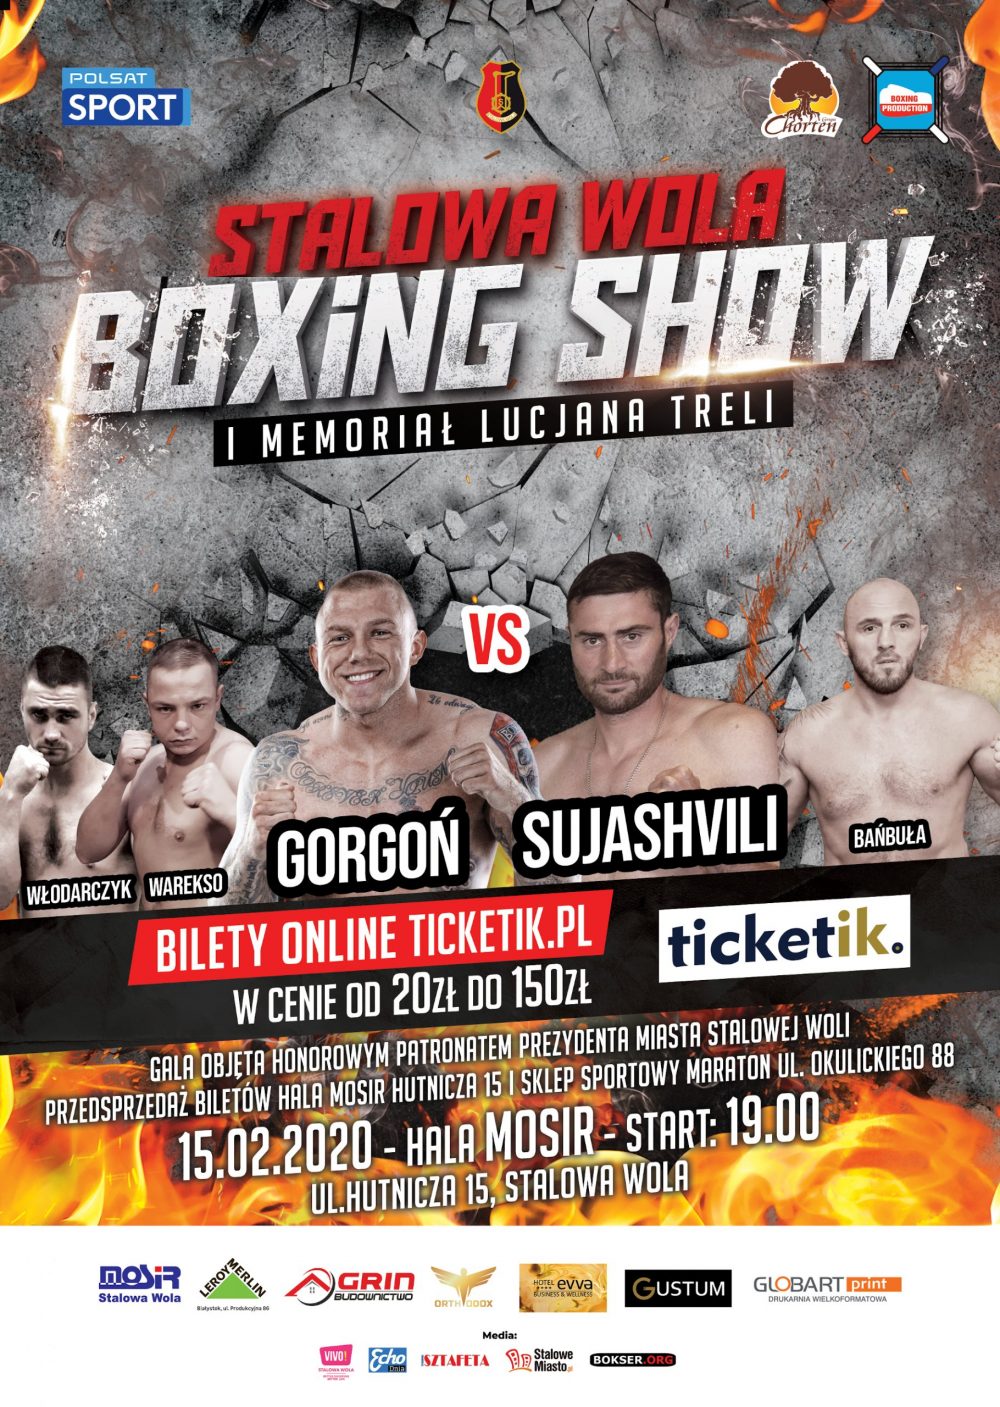 Stalowa Wola Boxing Show I Memoriał Lucjana Treli Gala